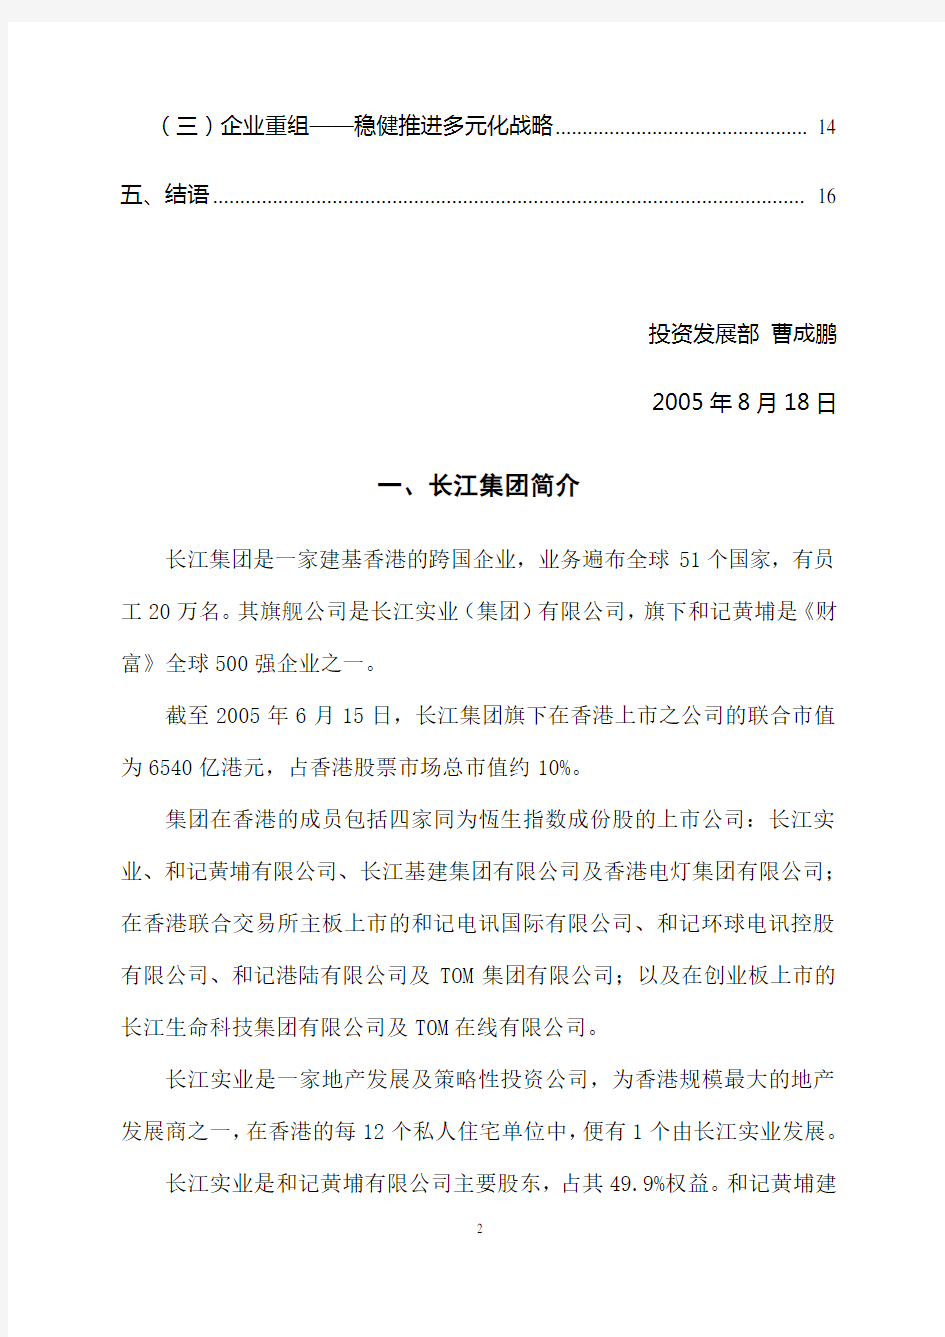 香港长江实业集团多元化战略分析报告